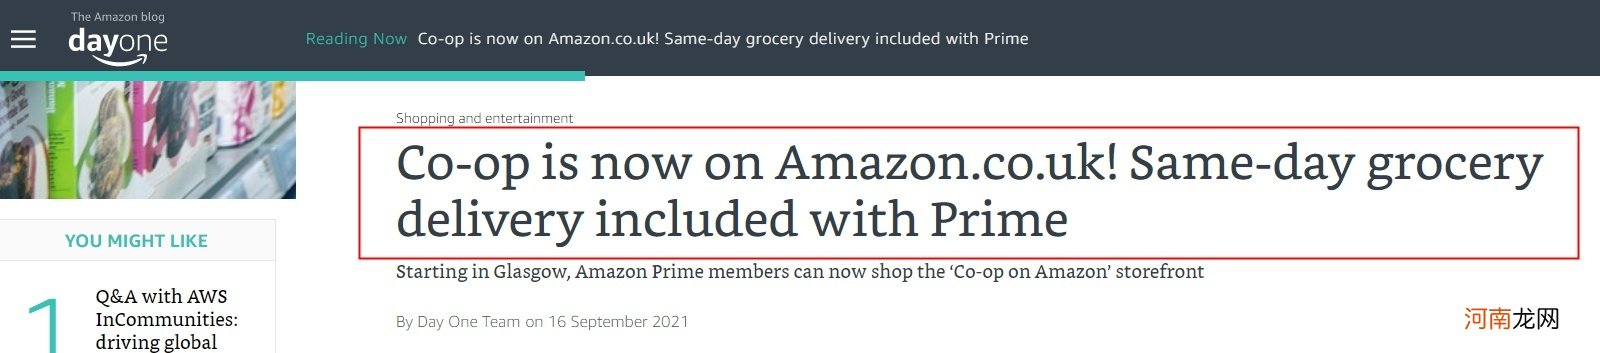 亚马逊与英国连锁超市Co-op深化合作